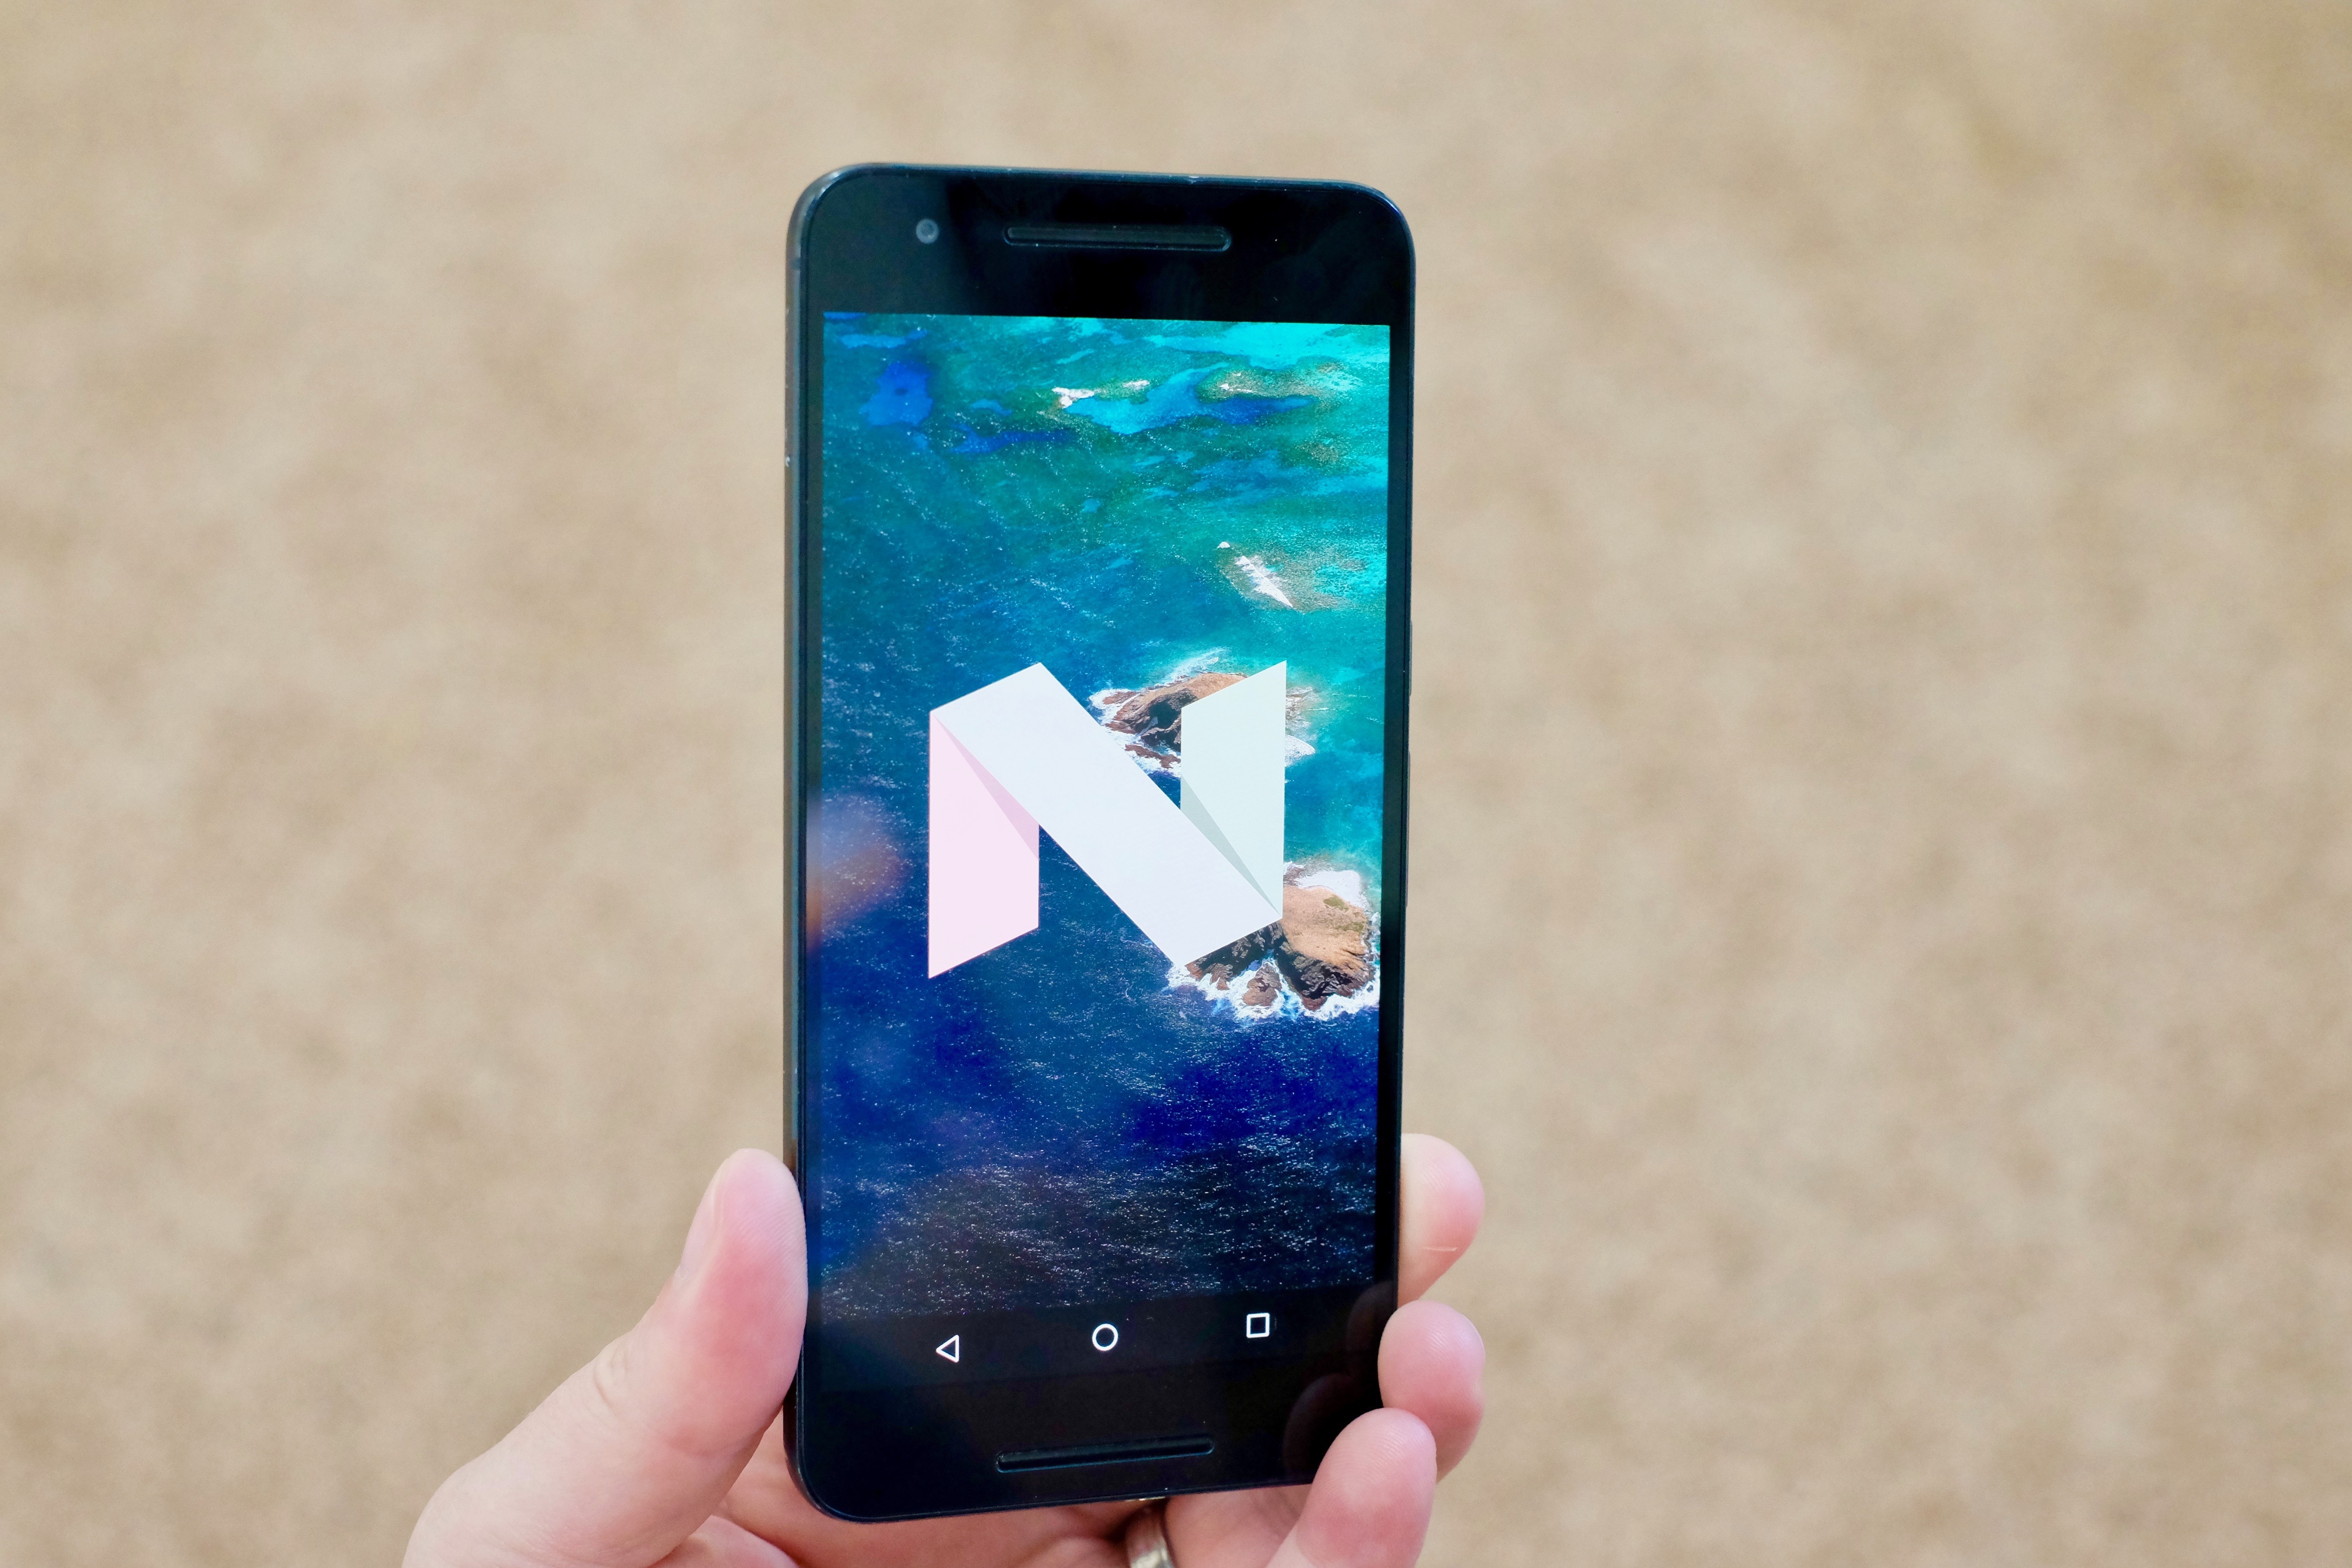 android 7.0 nougat壁紙,携帯電話,ガジェット,スマートフォン,通信機器,ポータブル通信デバイス